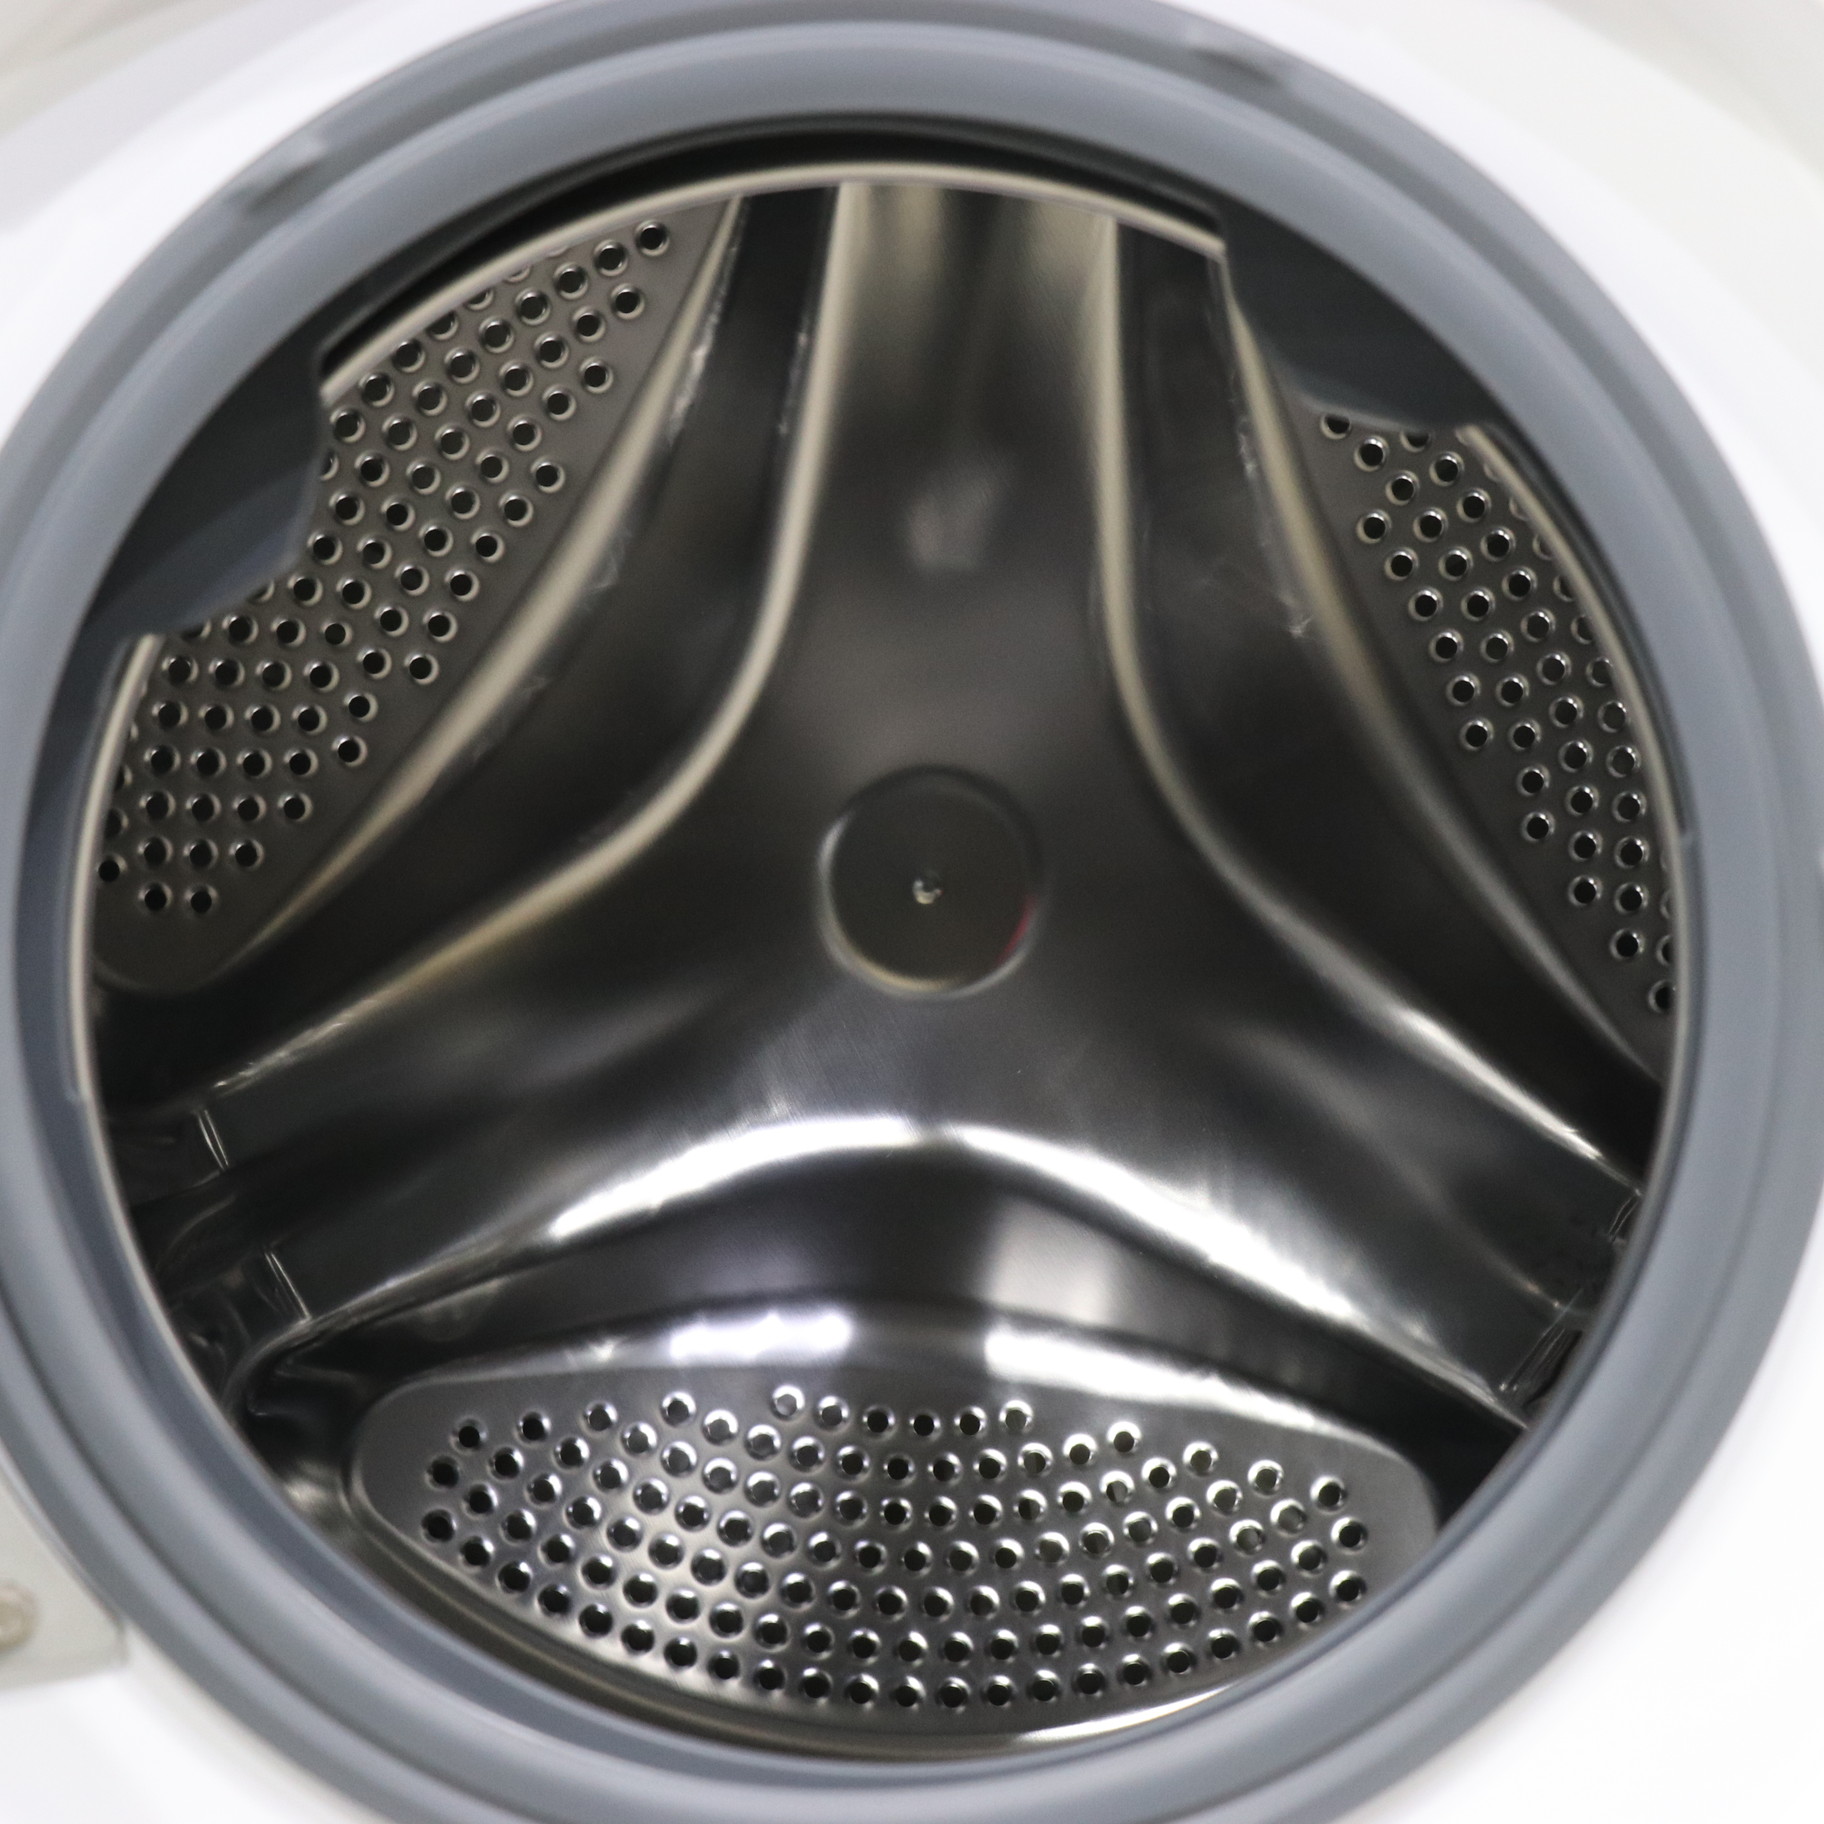 〔展示品〕 ドラム式洗濯乾燥機 ホワイト FLK842-W ［洗濯8.0kg ／乾燥4.0kg ／ヒーター乾燥(排気タイプ) ／左開き］